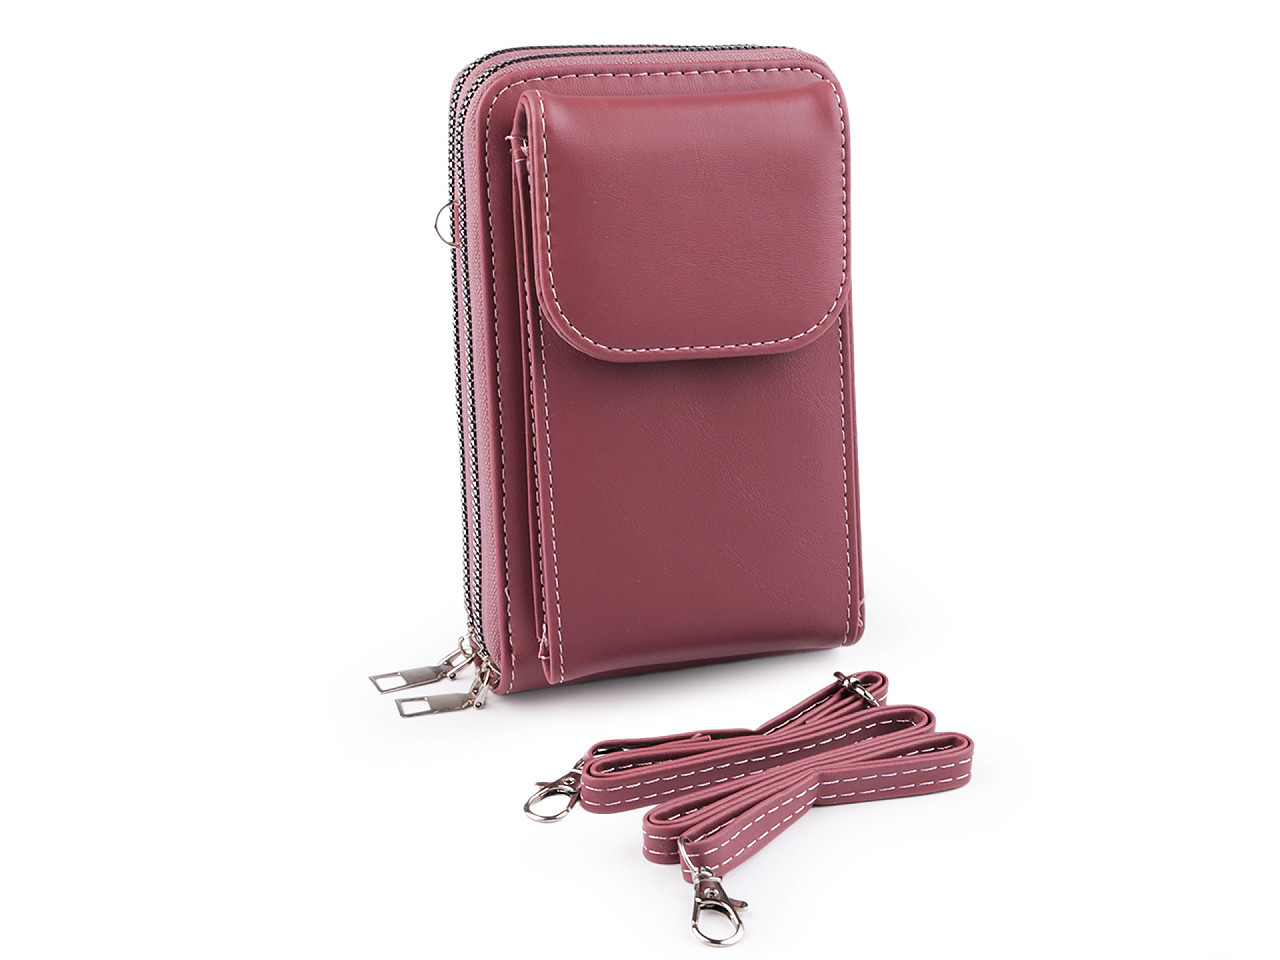 Peněženka s kapsou na mobil přes rameno crossbody 11x18 cm, barva 2 starorůžová